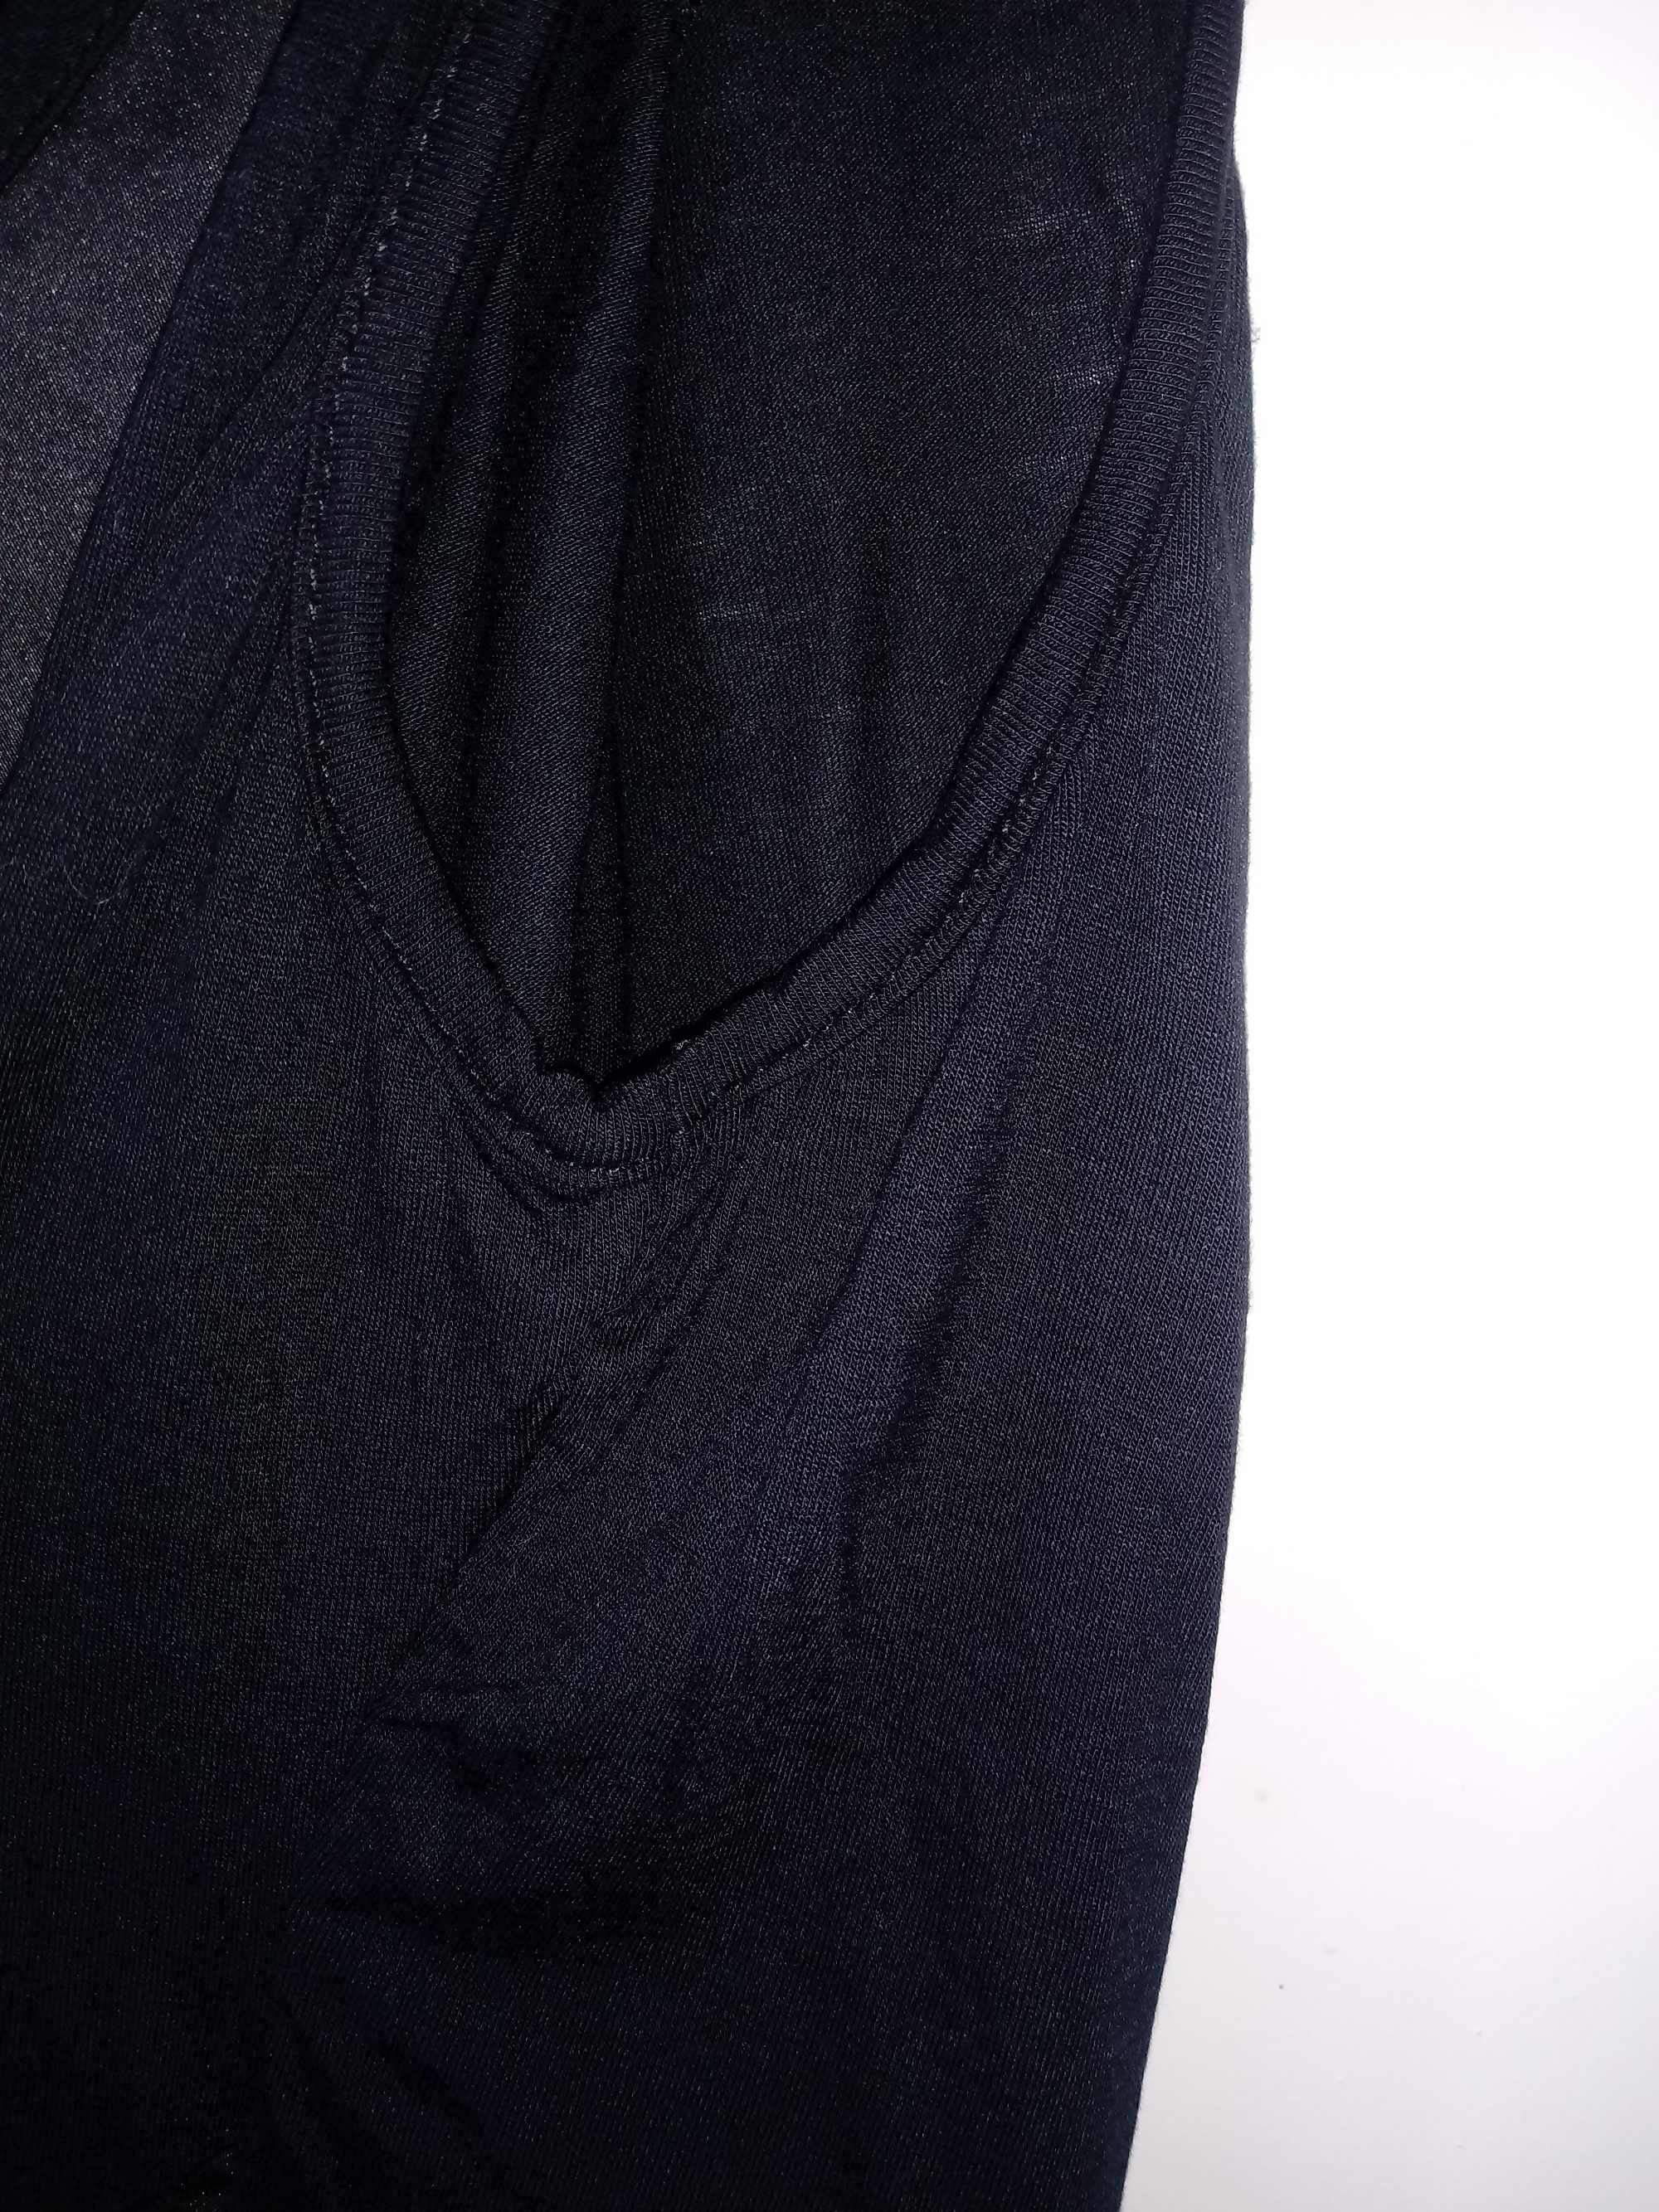 NOWA asymetryczna czarna sukienka KappAhl gothic 44 XXL / 46 XXXL